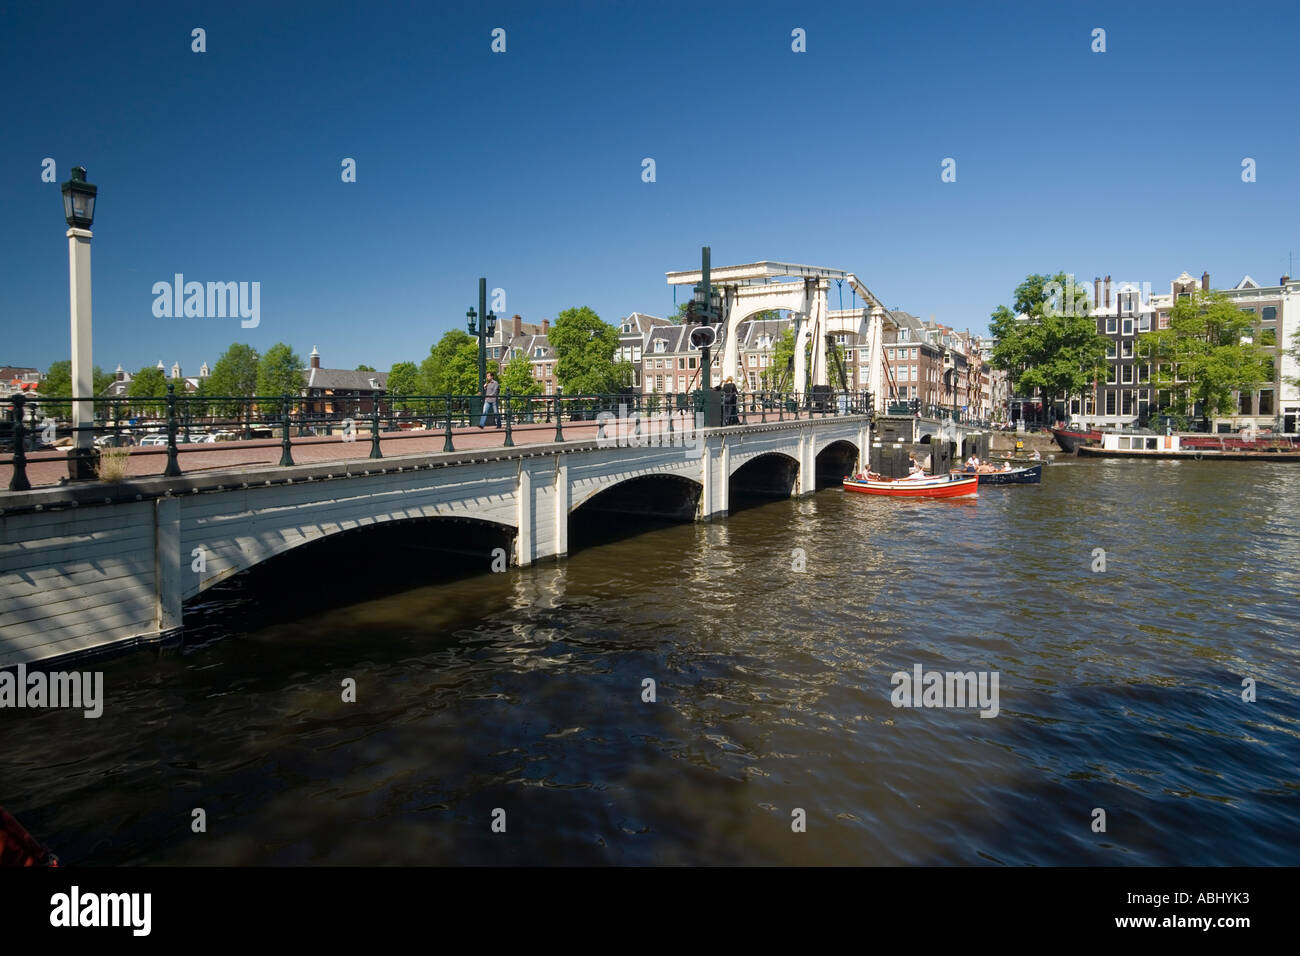 Tempo libero barche sul fiume Amstel in una giornata di sole Magere Brug Skinny Bridge in background Amsterdam Olanda Paesi Bassi Foto Stock